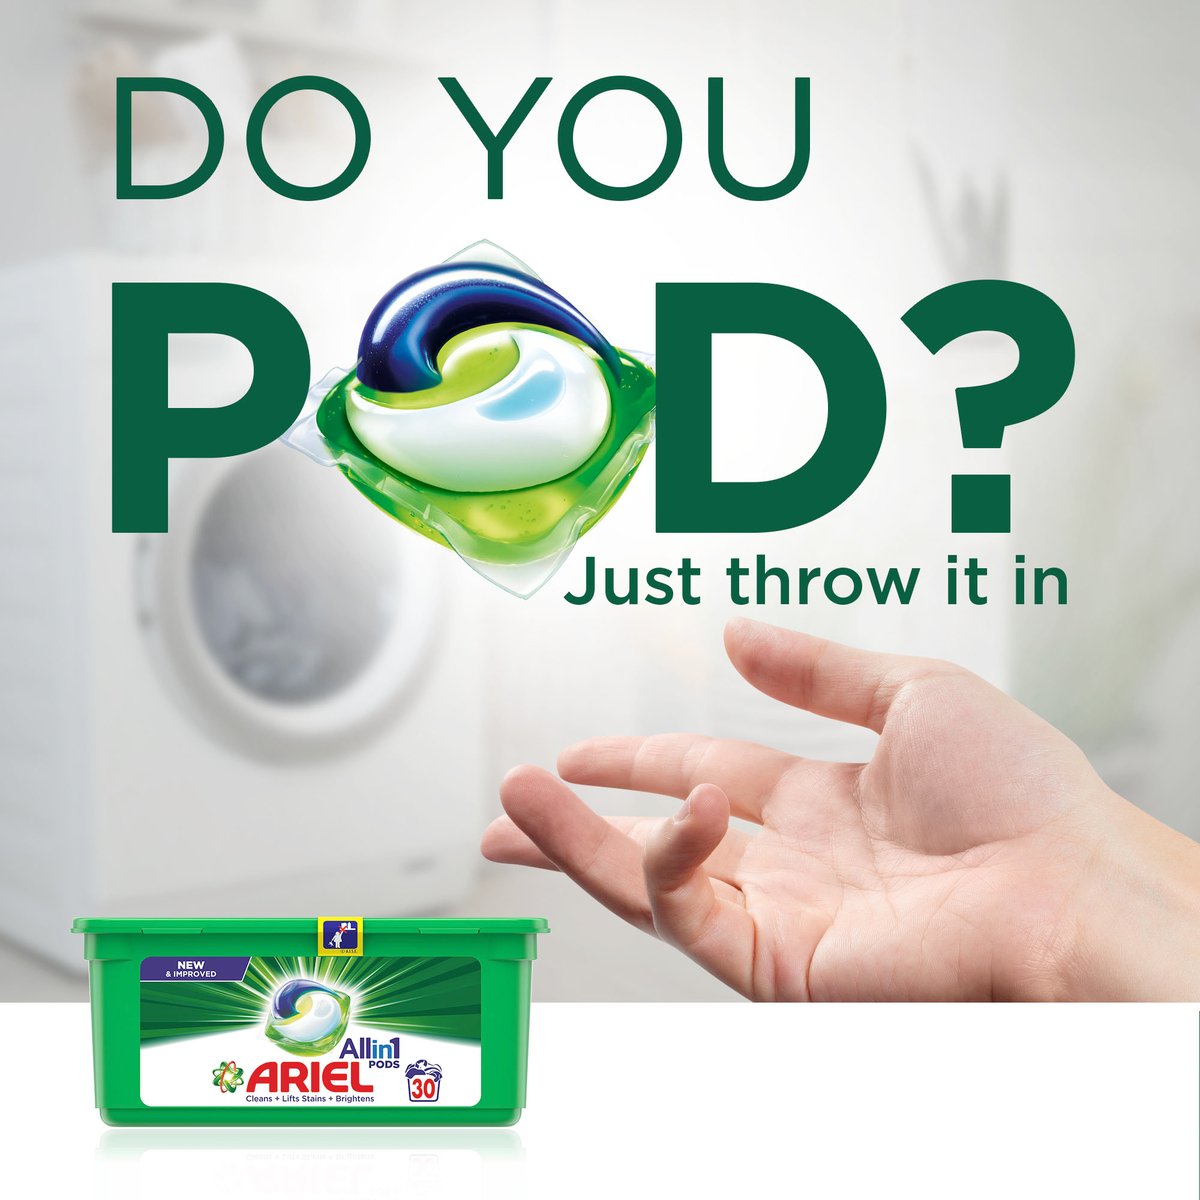 Ariel All in 1 Pods Original Scent Liquid Detergent Capsules Value Pack 15 pcs